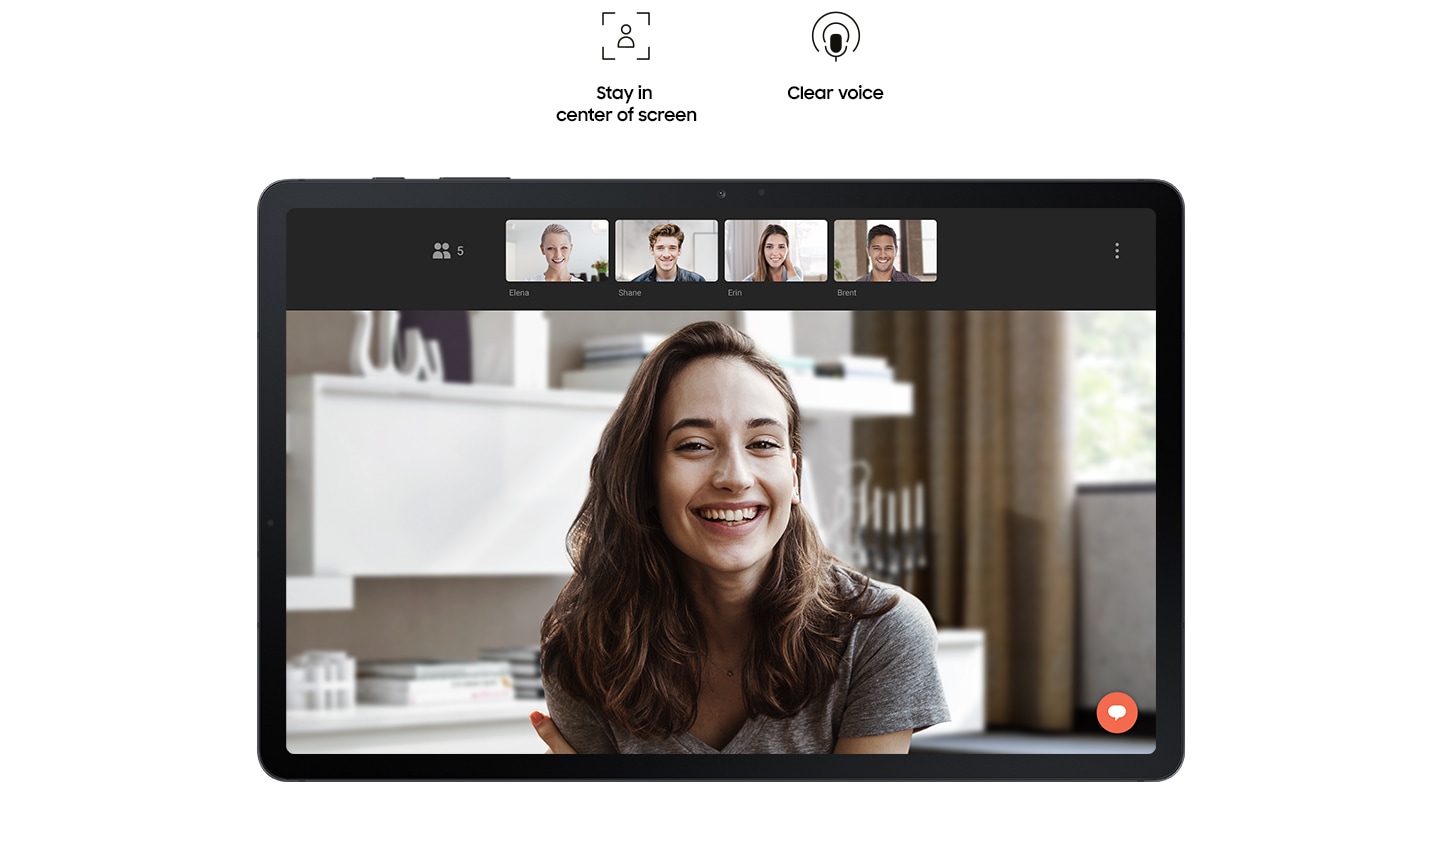 Galaxy Tab S7 FE 5G е показан фронтално, а на екрана му върви видеочат между жена и четирима приятели. Надписите на иконите гласят: остани в центъра на екрана, покажи повече пространство около себе си и ясен глас.